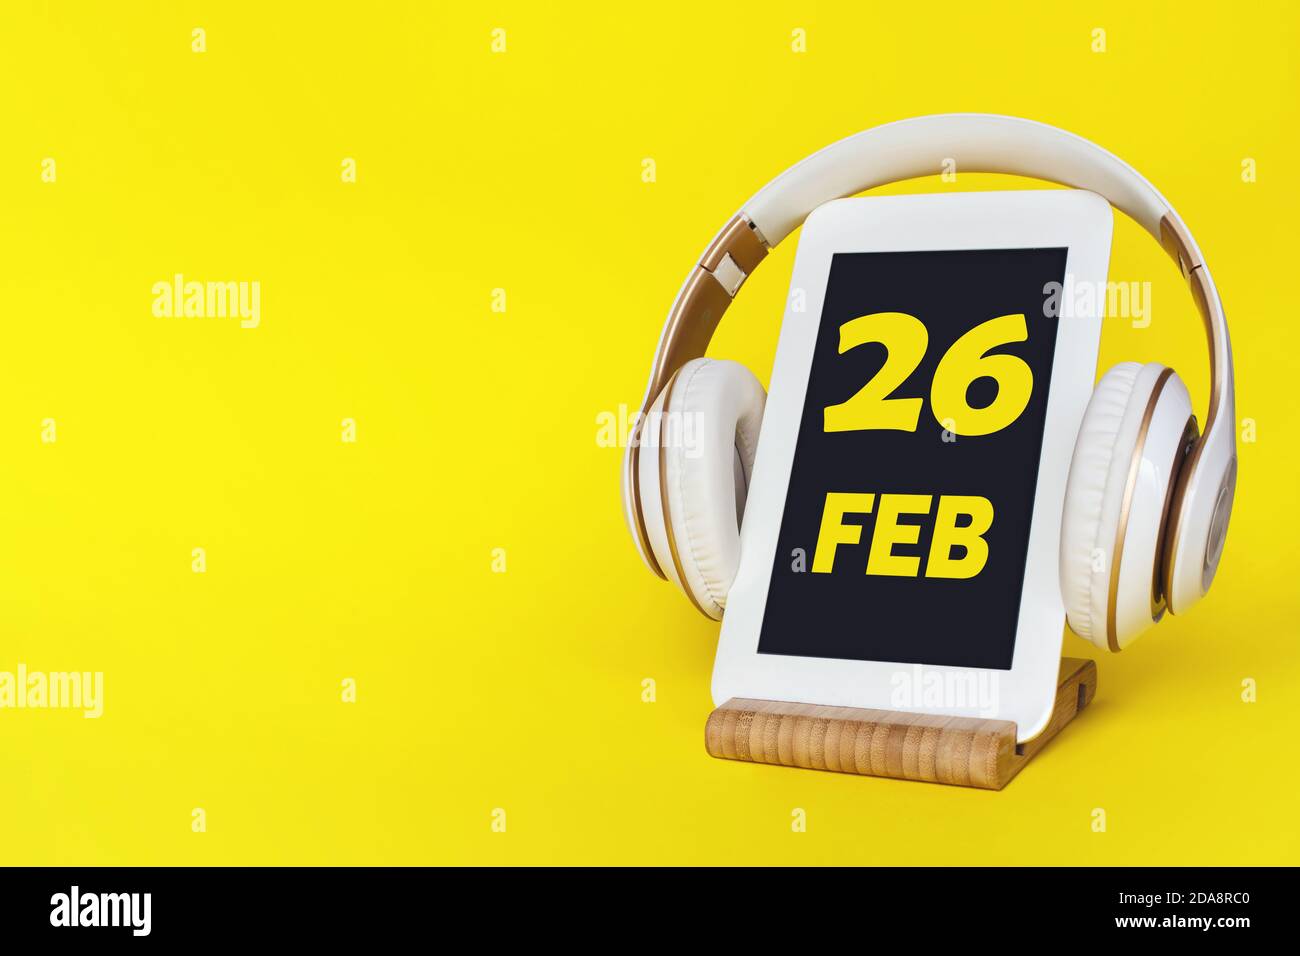 Februar. Tag 26 des Monats, Kalenderdatum. Elegante Kopfhörer und modernes Tablet auf gelbem Hintergrund. Leerzeichen für Text. Bildung, Technologie, Leben Stockfoto